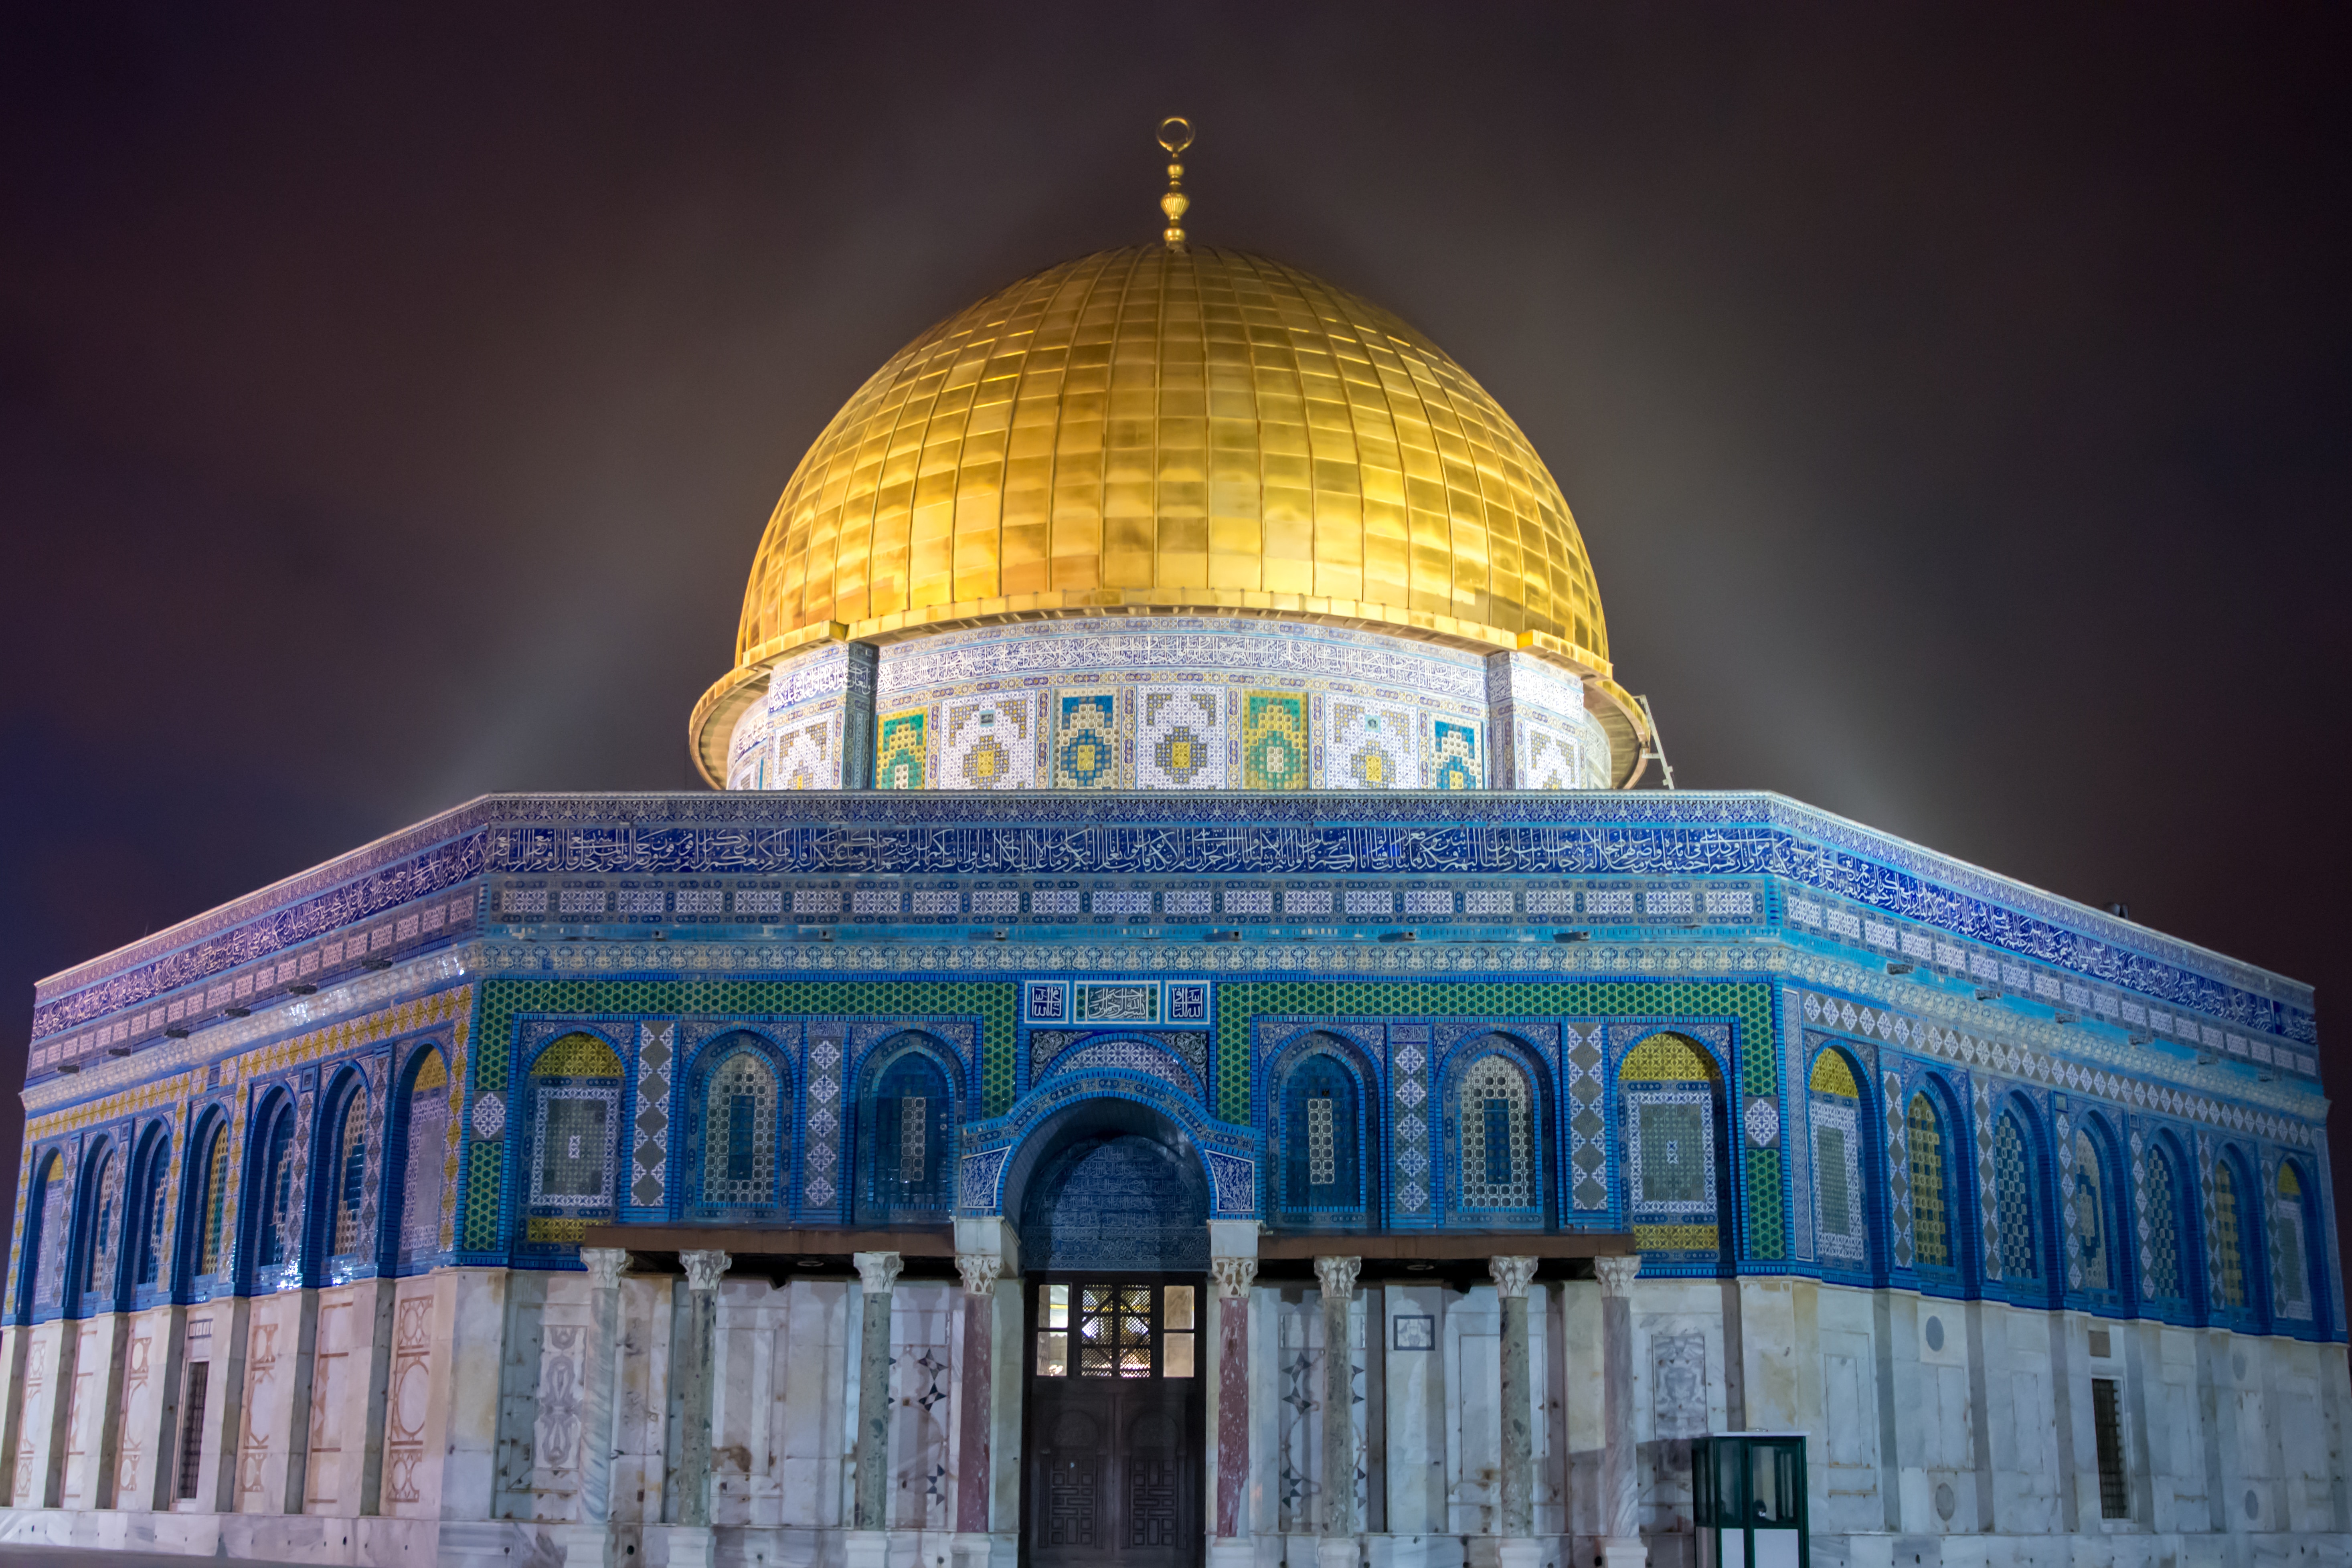 लब्बैक या अक़्सा | मोमिन है तो फिर मस्जिद-ए-अक़्सा की ख़बर ले / Labaik Ya Aqsa | Momin Hai To Phir Masjid-e-Aqsa Ki Khabar Le